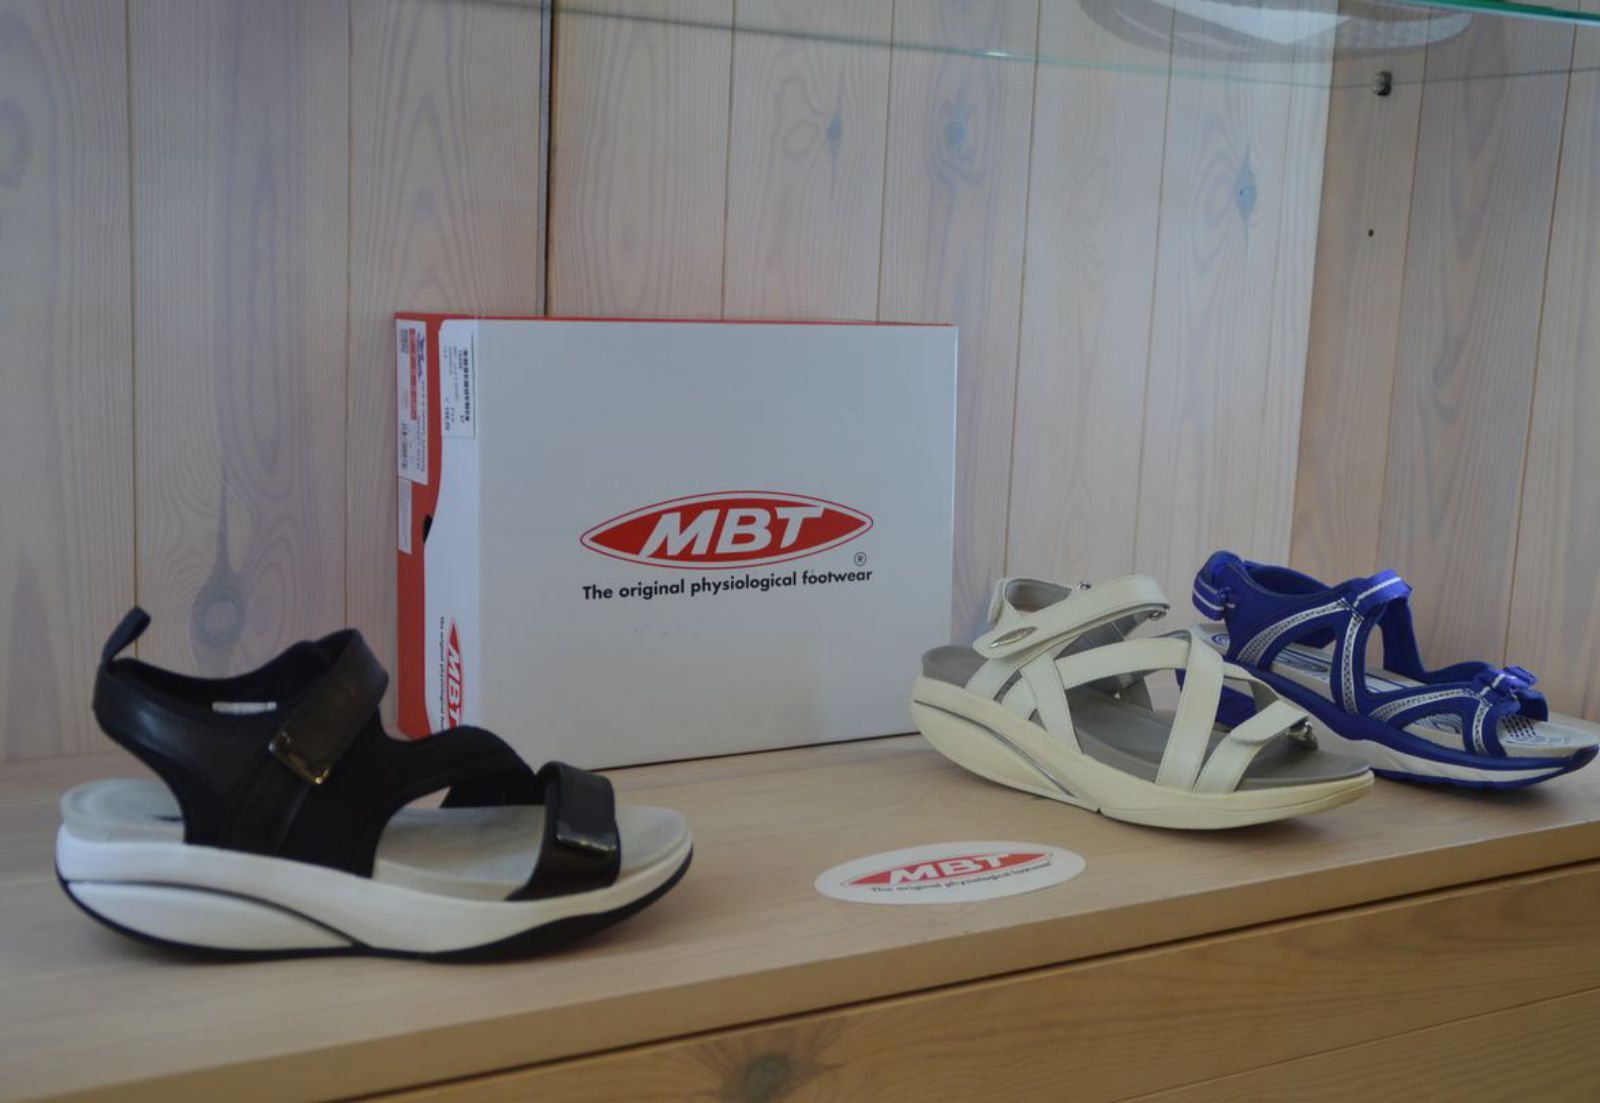 Roig Urban Comfort: Les sabates MBT garanteixen el màxim confort per millorar salut - Empordà